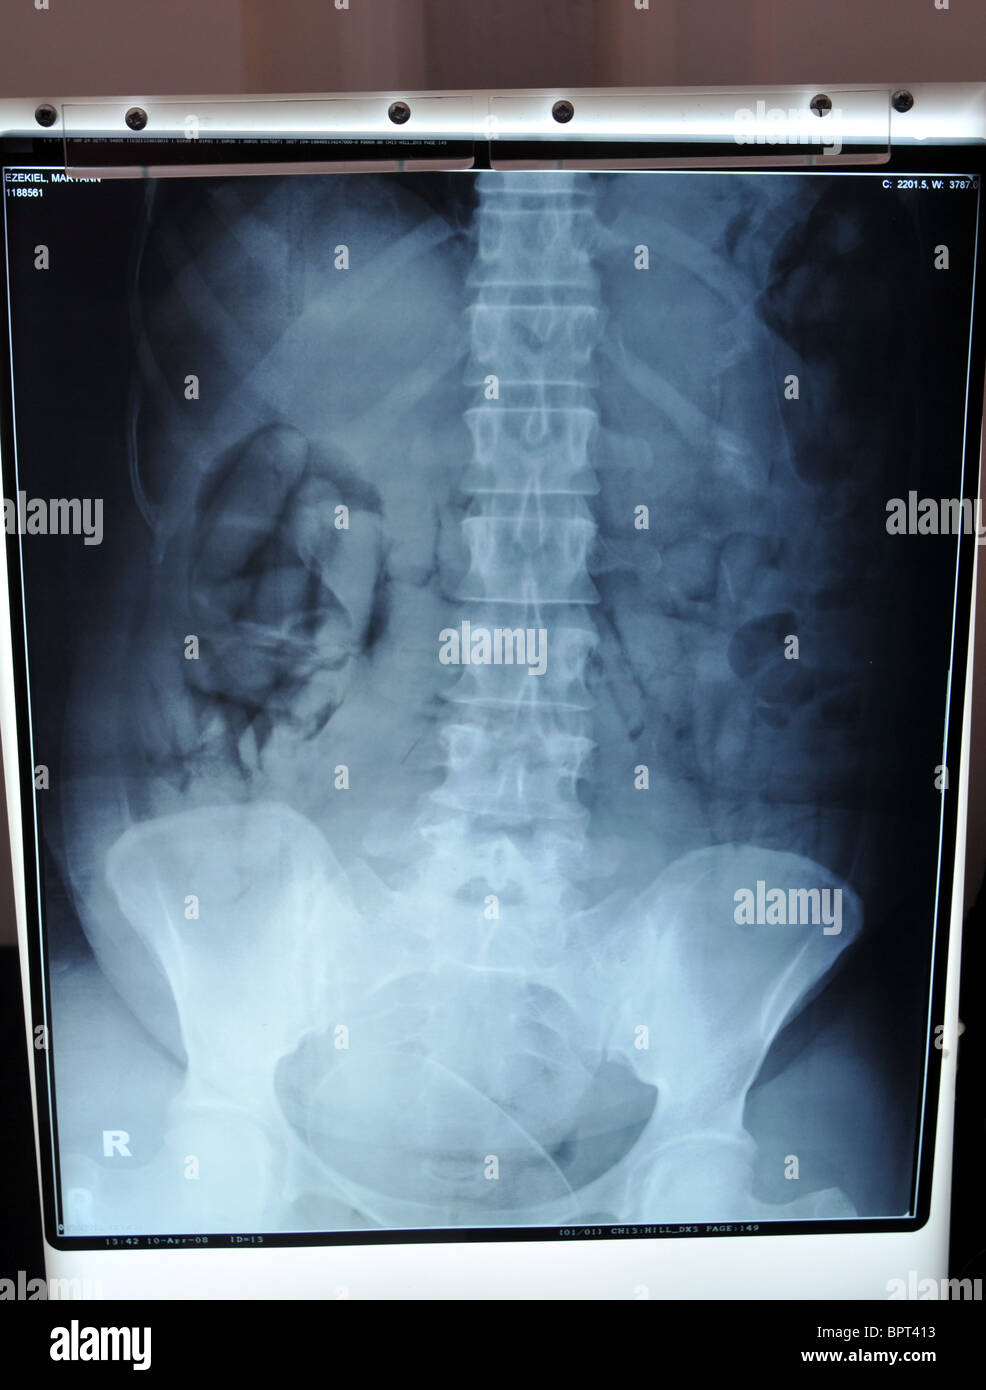 Sicherstellungen von Drogen Schmuggel von der UK Border Agency. X-ray zeigt mit Klebeband-Pakete, die von einem Drogenschmuggler verschluckt wurden Stockfoto